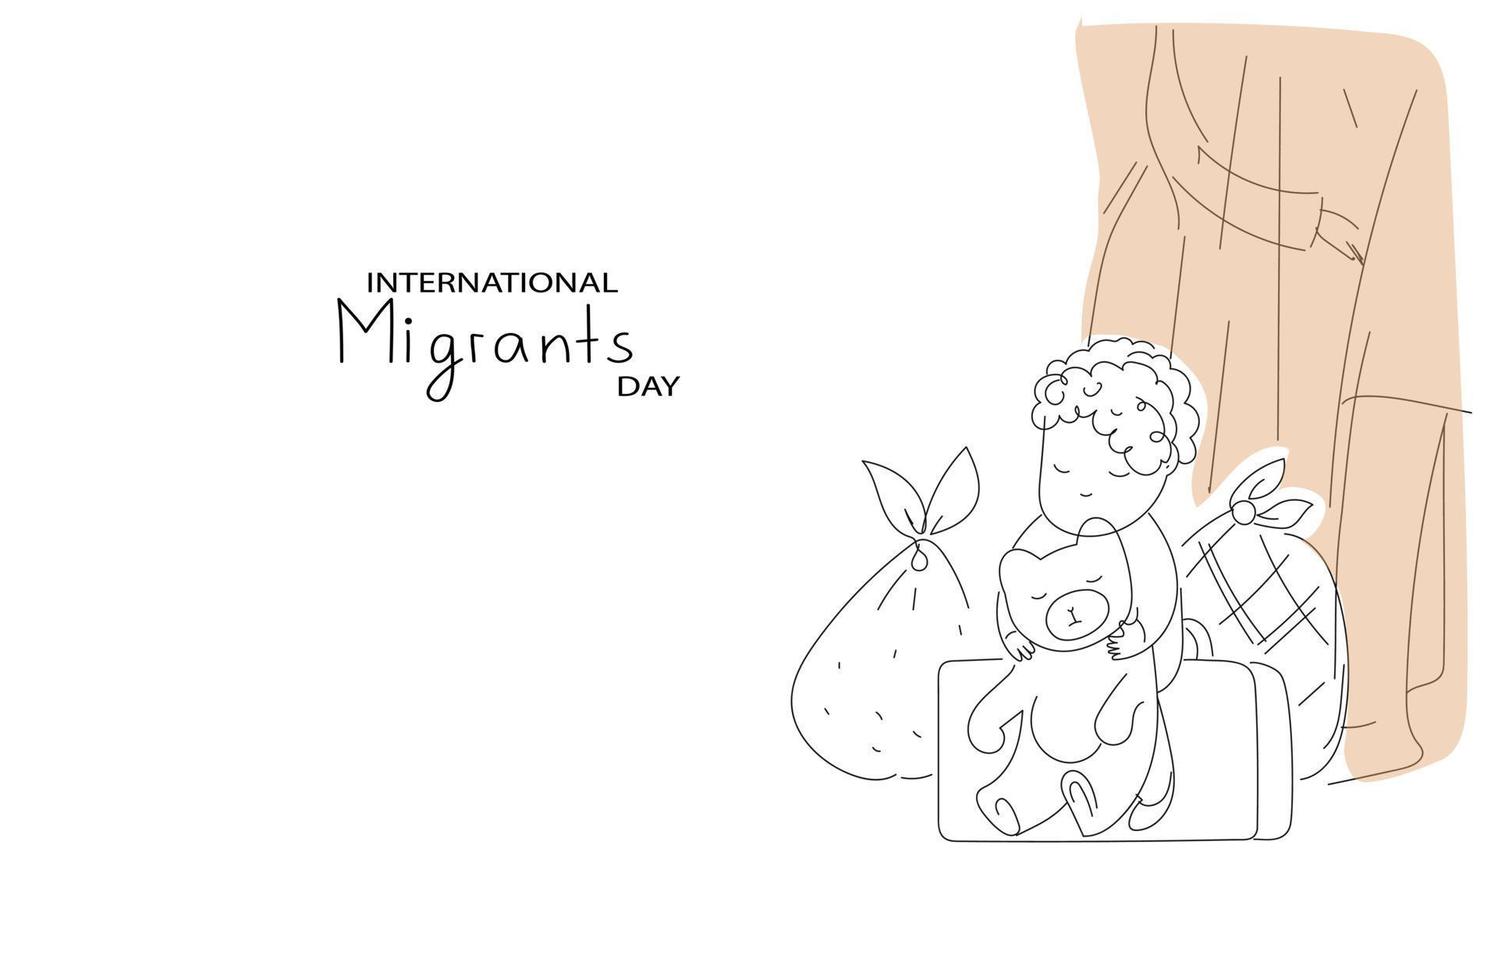 journée des migrants internationaux. illustration de doodle plat horizontal en mode sombre vecteur multicolore pour bannière de médias sociaux, affiche